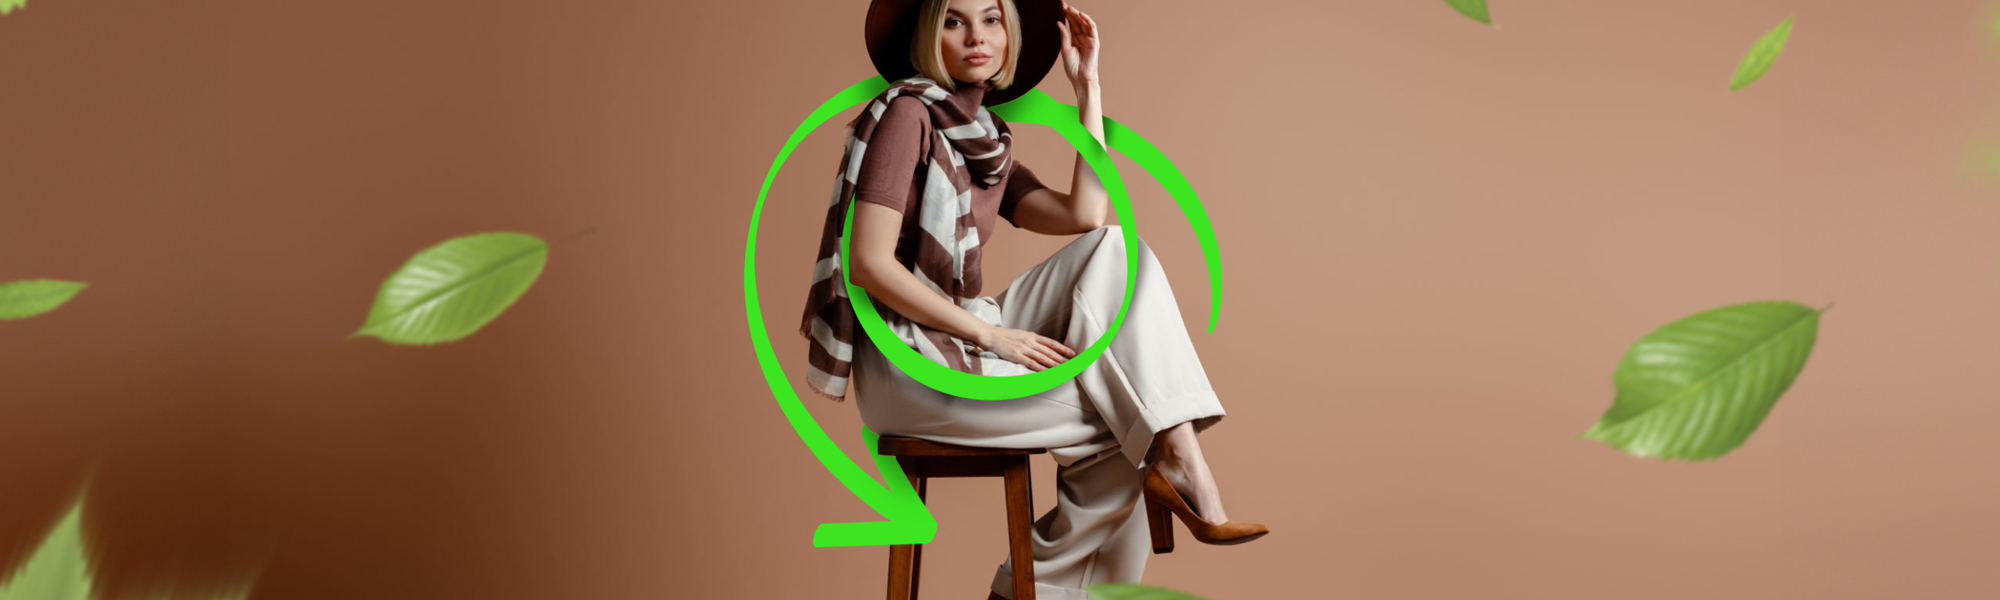 L'immagine mostra una persona che indossa capi second hand, un esempio di economia circolare nel settore della moda.